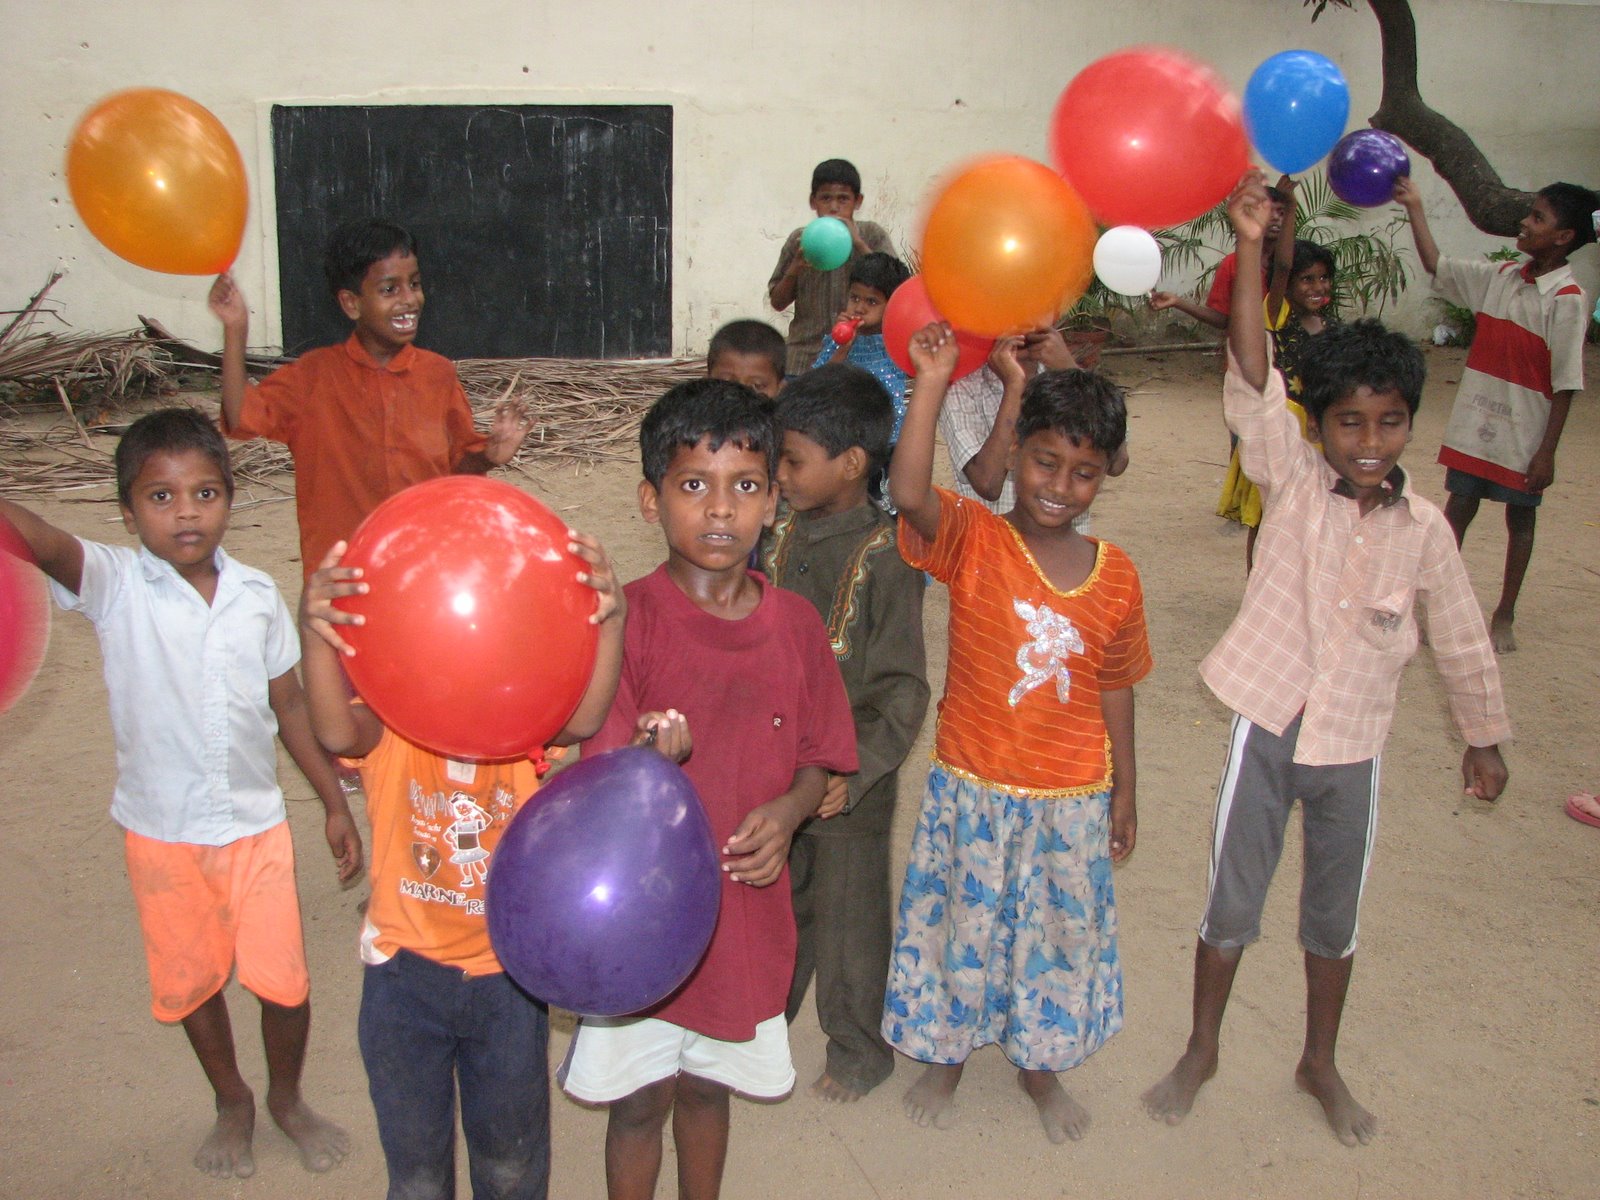 [kids+at+seams+++playing+with+balloons.jpg]